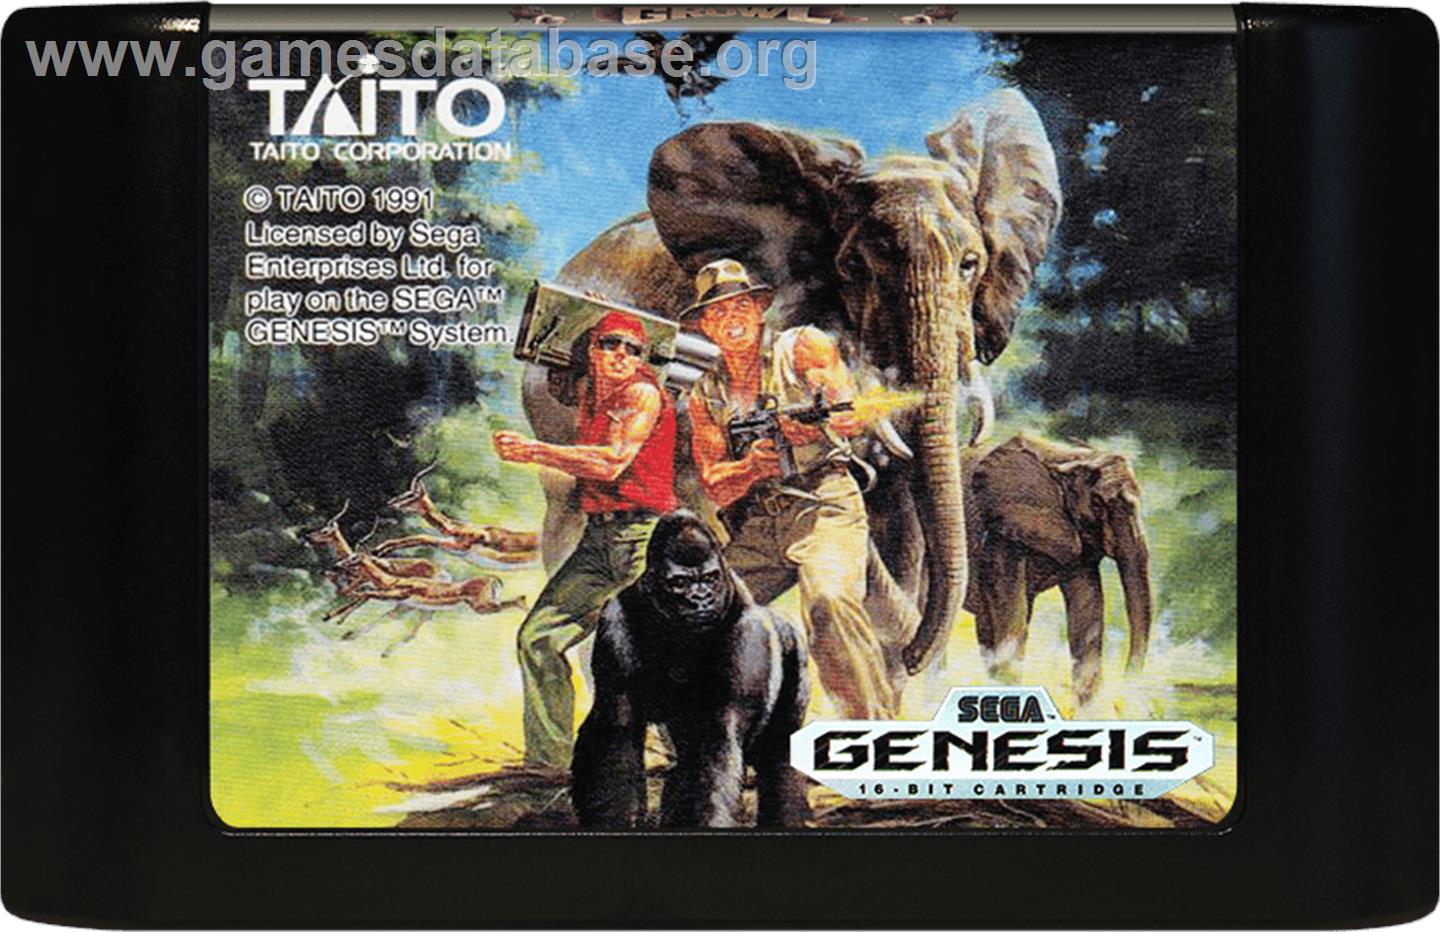 Growl - Sega Genesis - Artwork - Cartridge